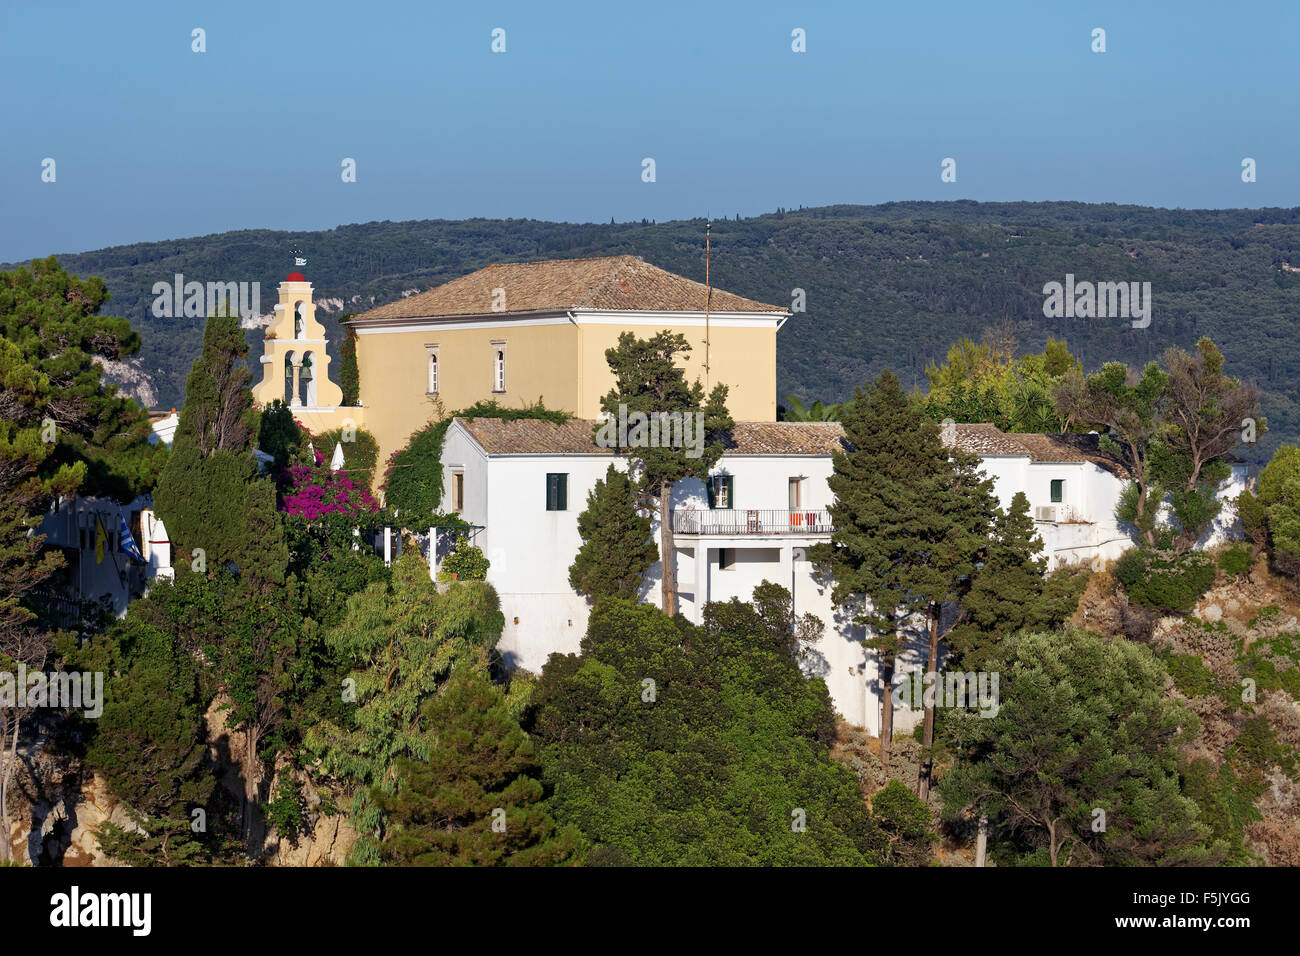 Monastery of Panagia Theotokos tis Paleokastritsas or Panagia Theotokos, Paleokastritsa, Corfu, Ionian Islands, Greece Stock Photo